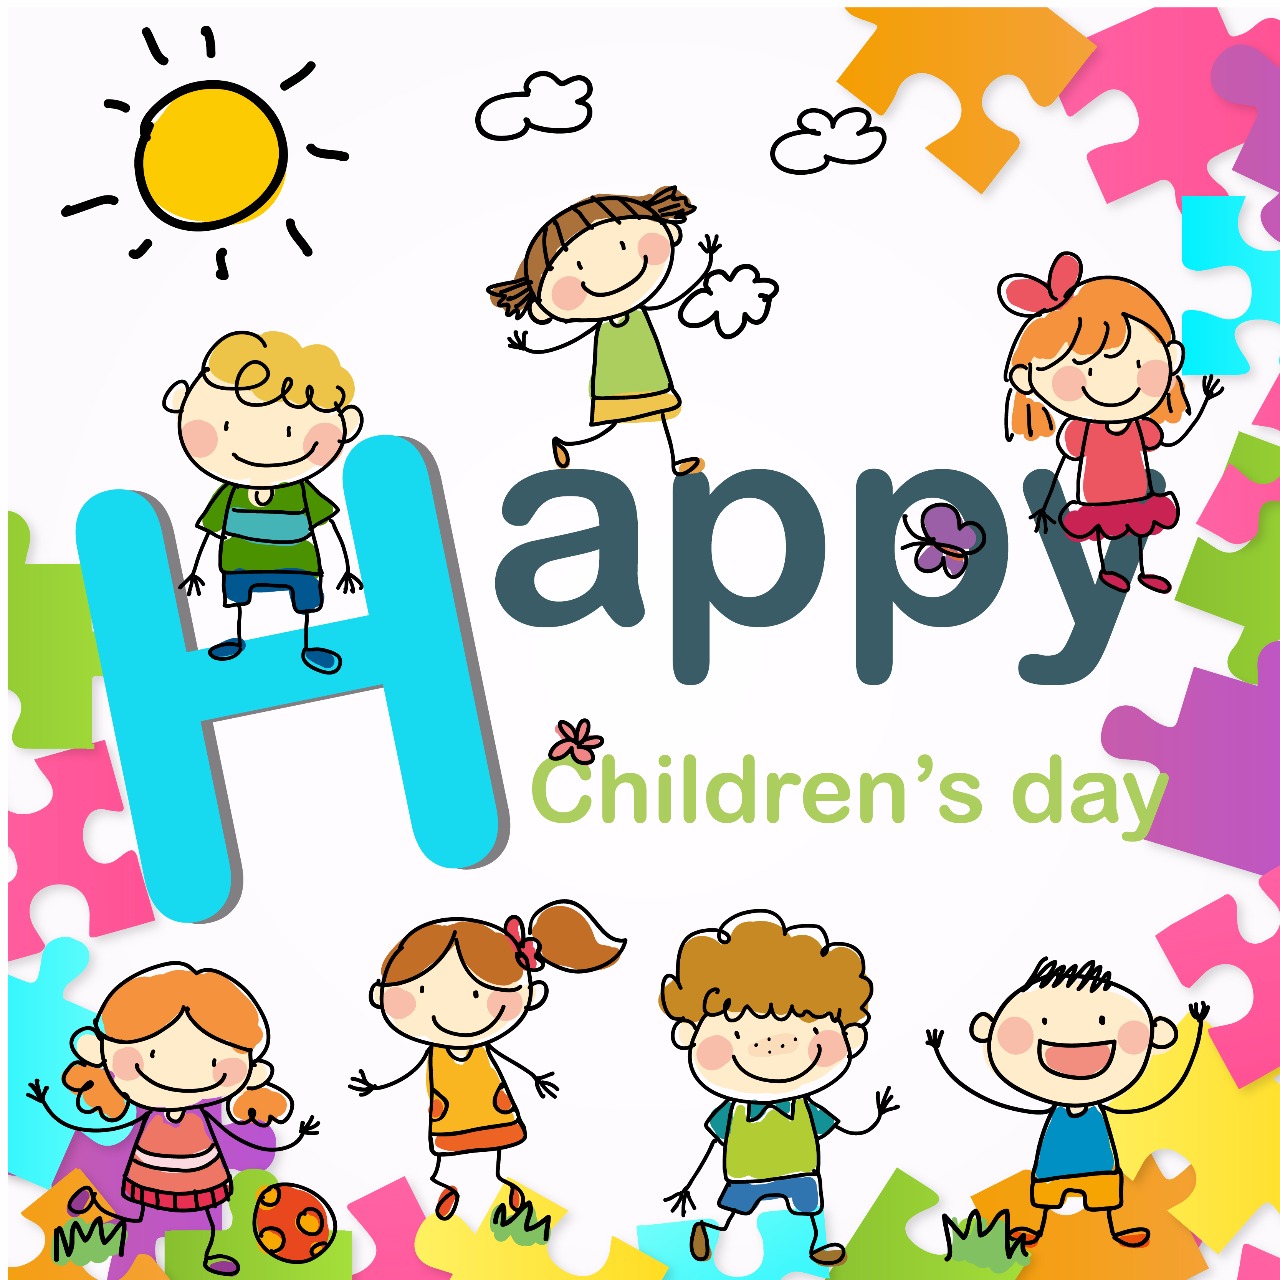 Happy Children’s day !